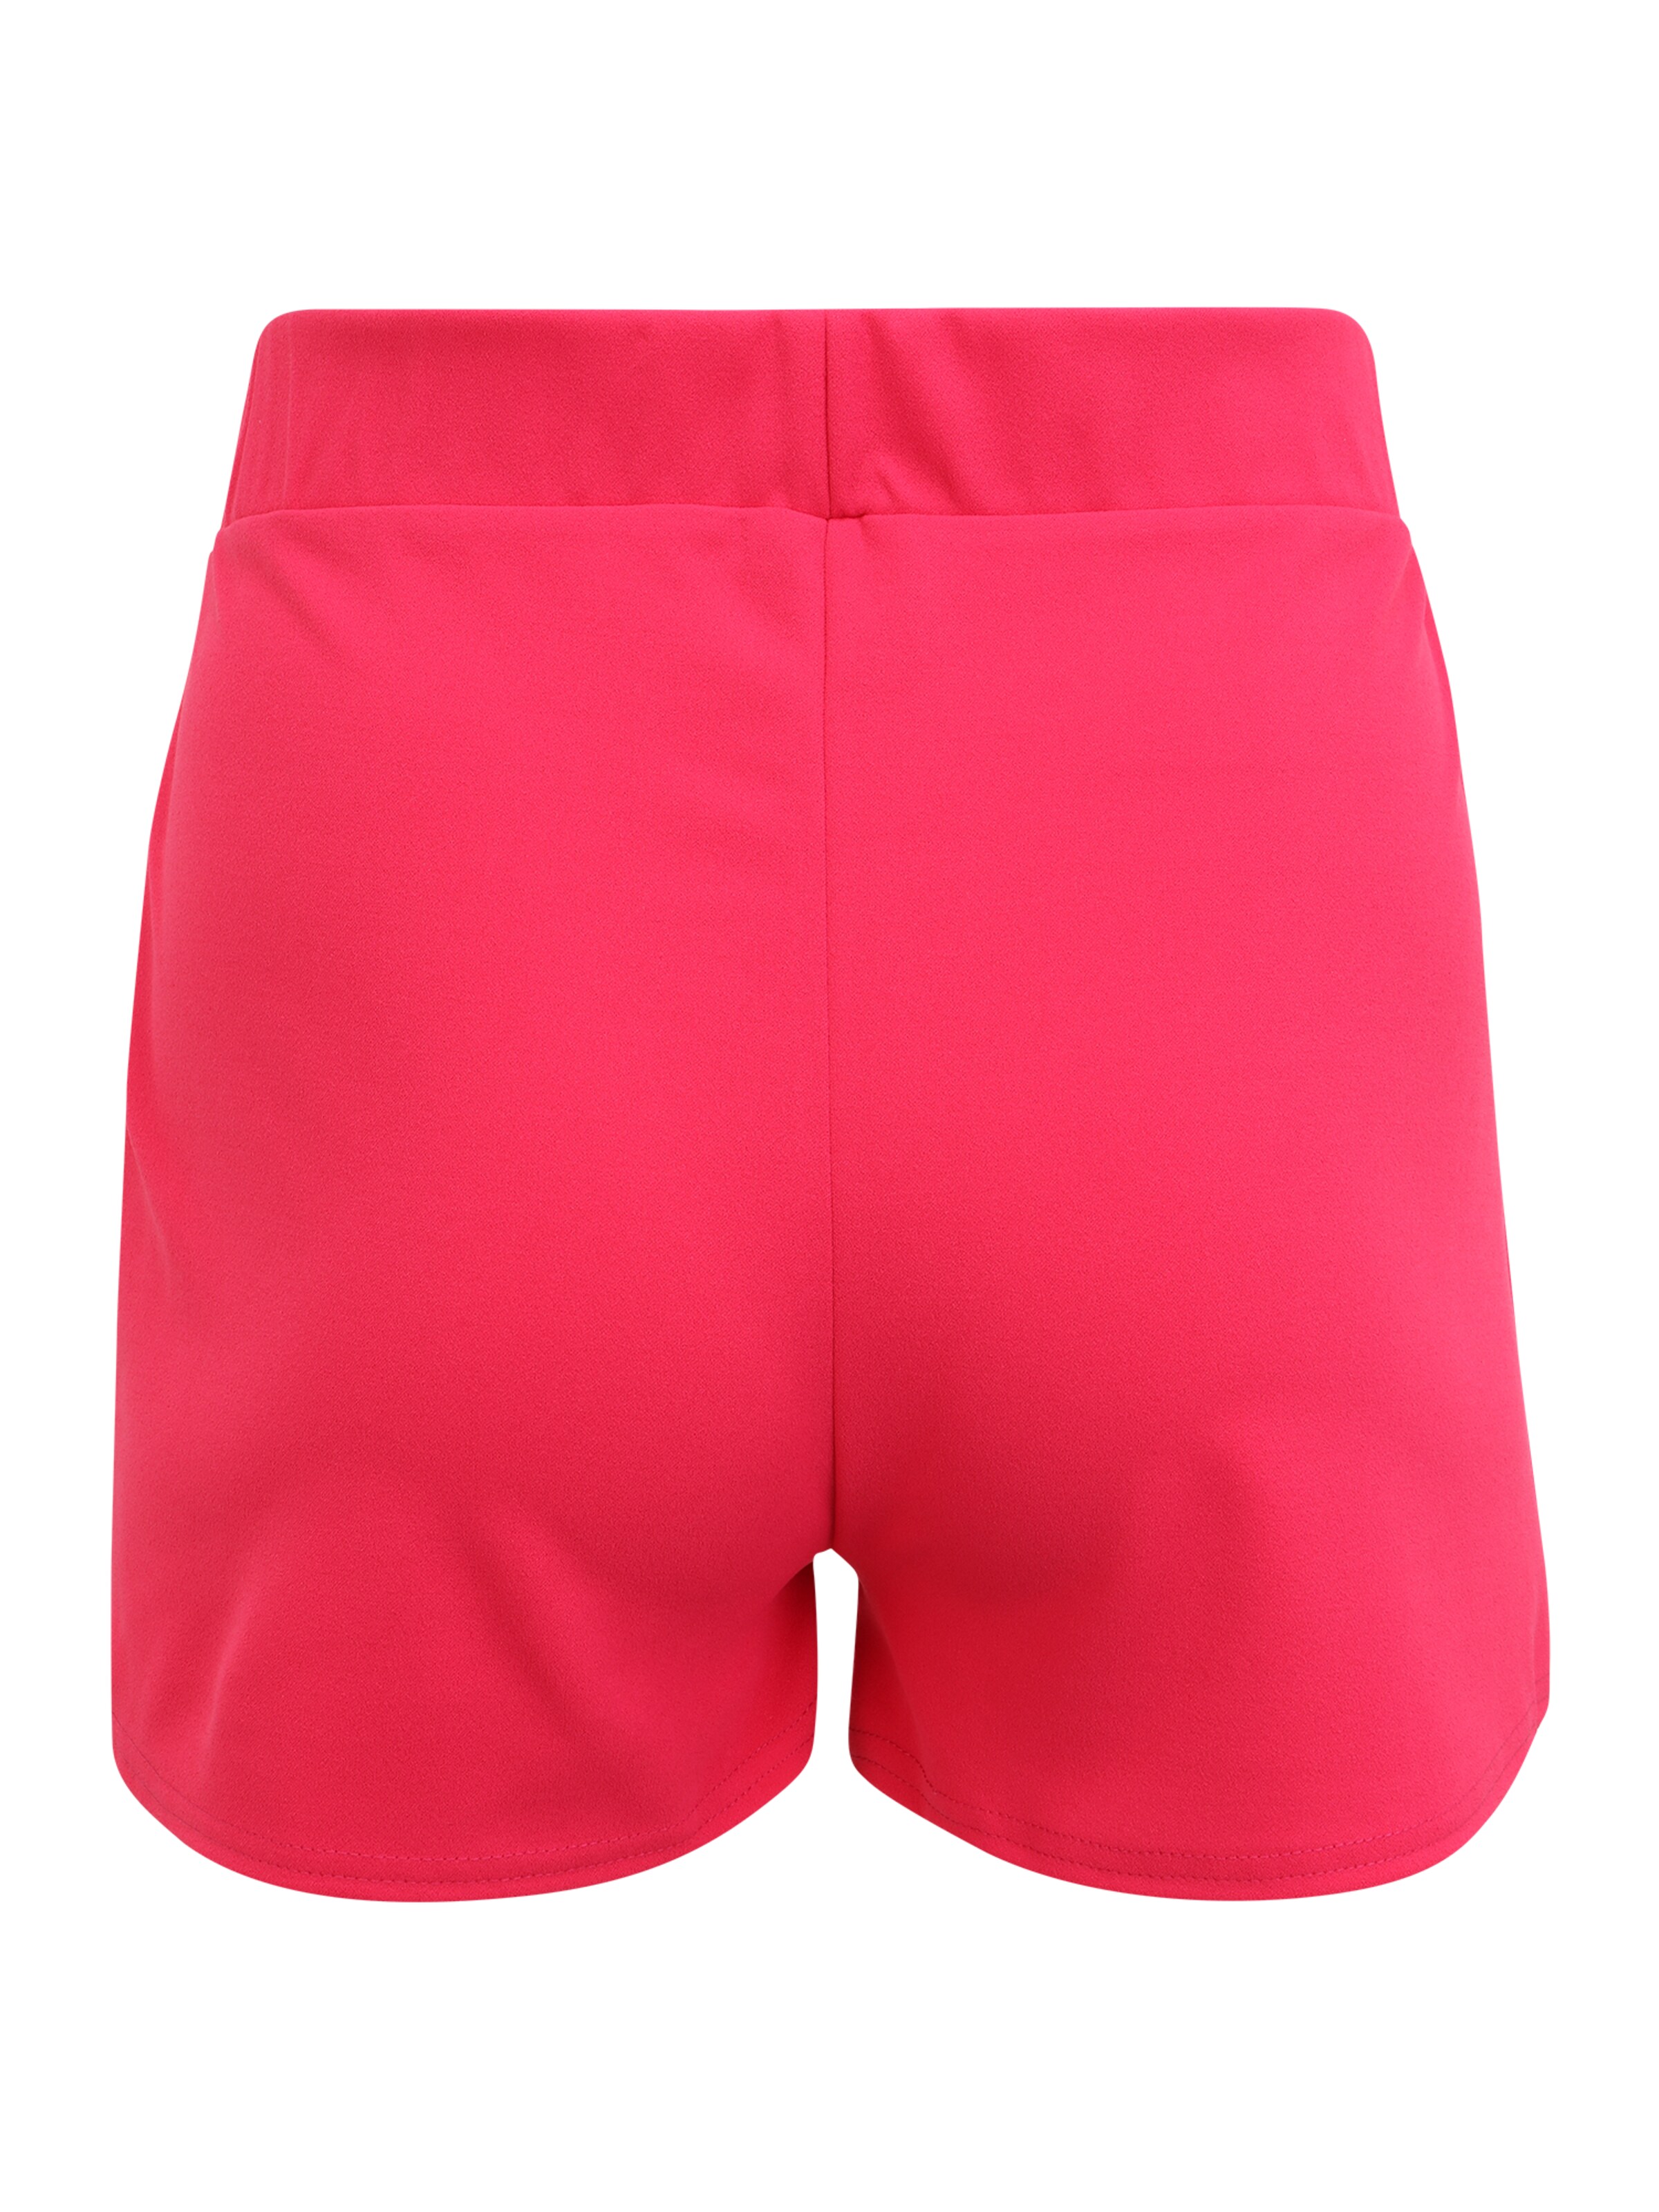 Abbigliamento hYBu0 Public Desire Curve Pantaloni in Rosa Scuro 